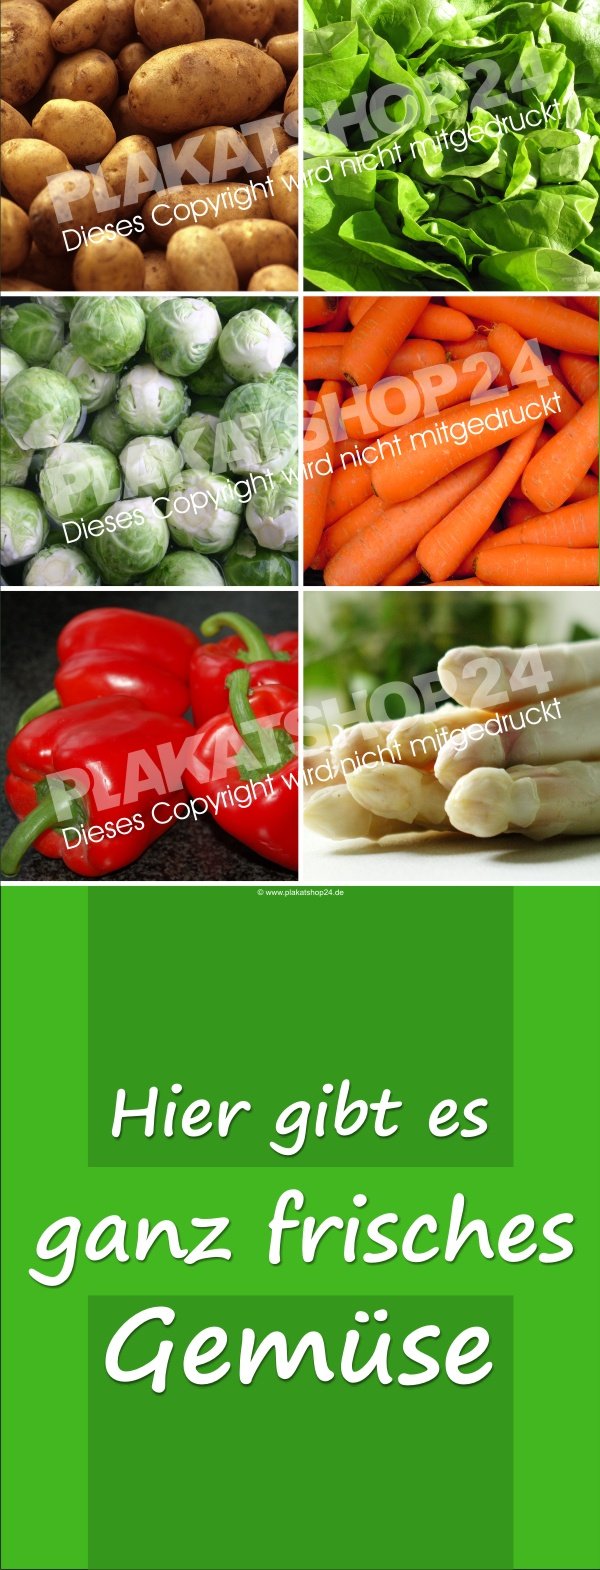 Gemüsebanner für den Verkauf von frischem Gemüse